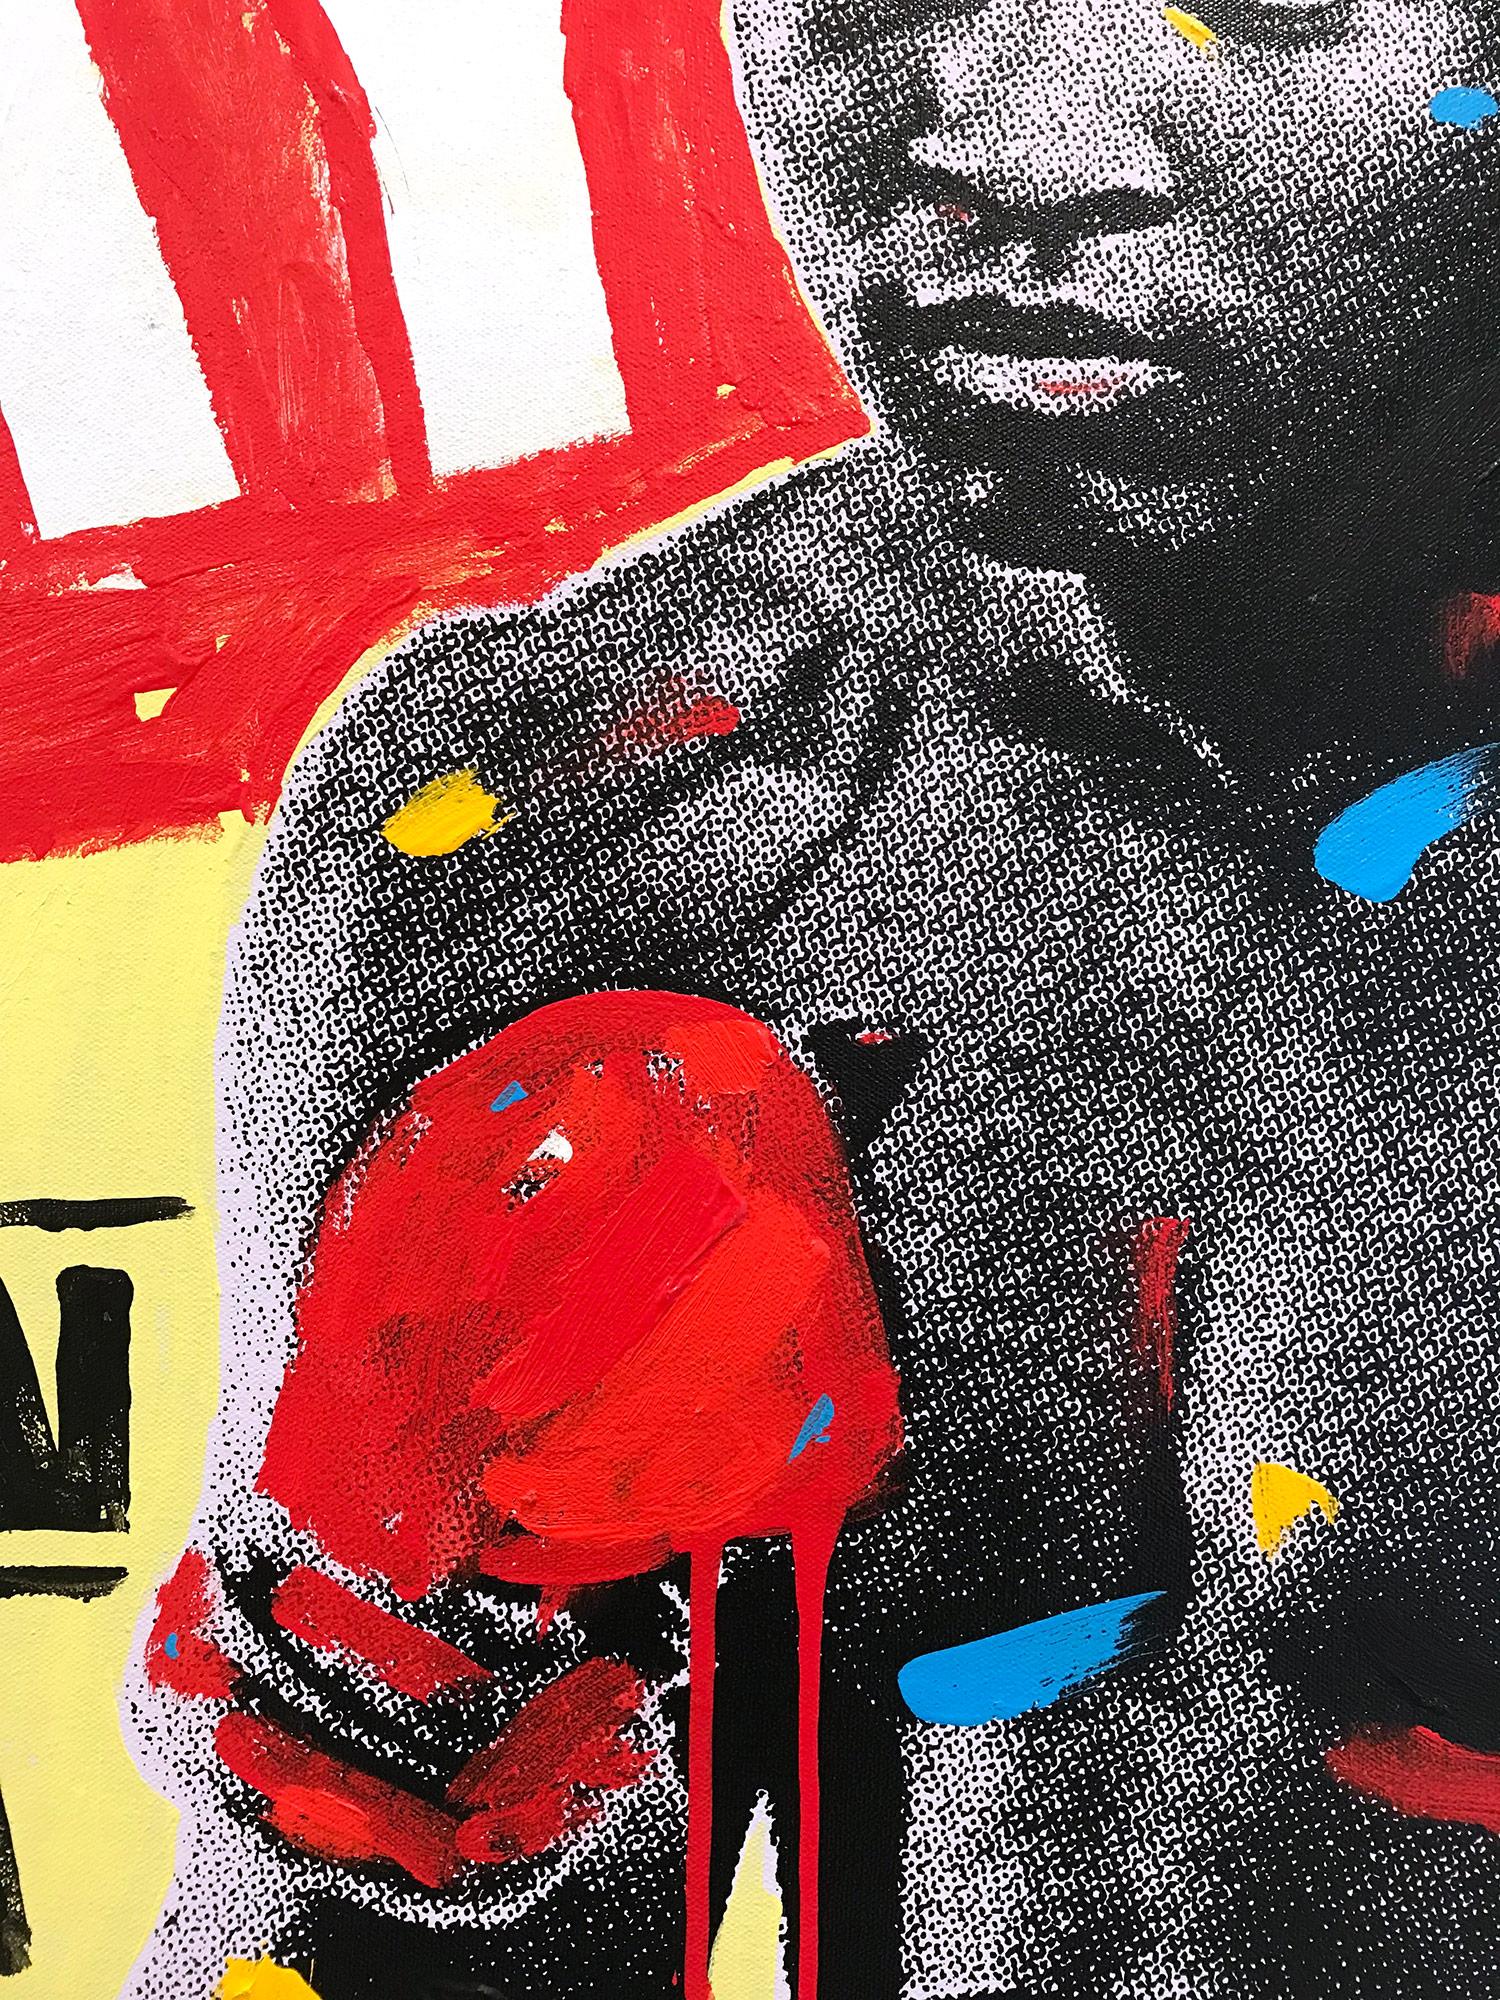 Peinture Pop Art Muhammad Ali sur toile fond rouge et jaune - Beige Abstract Painting par John Stango